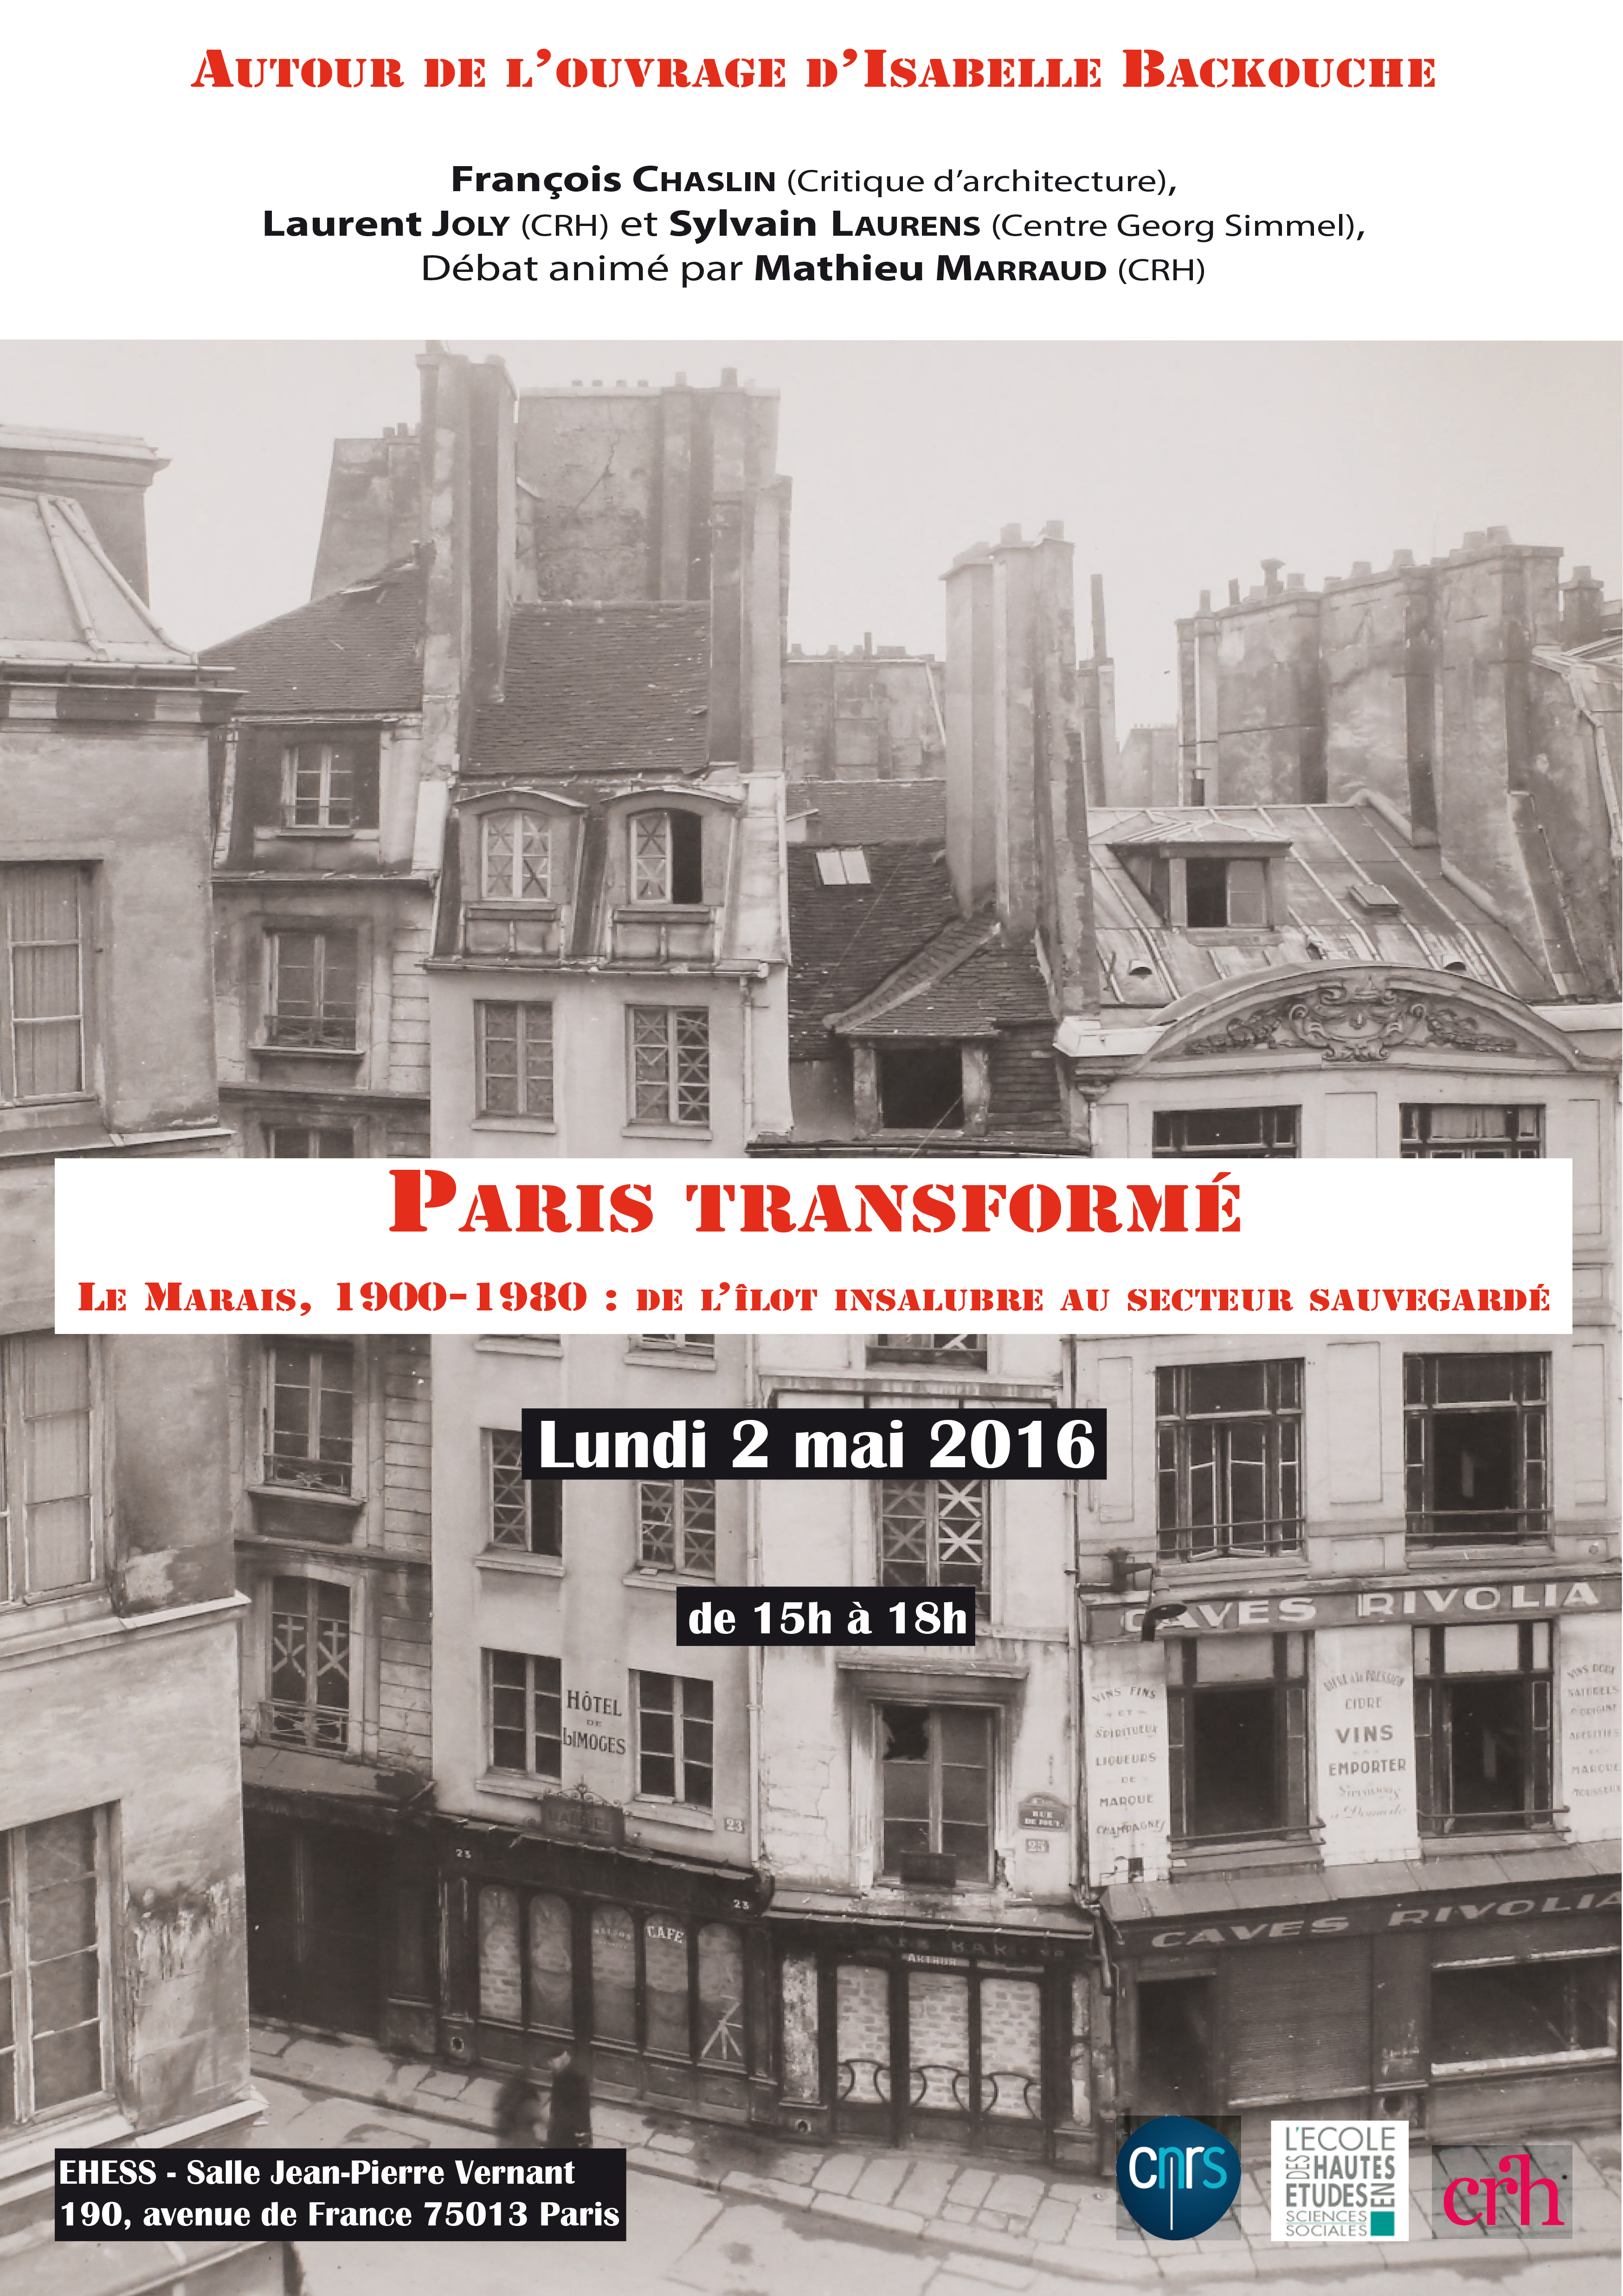 Autour de l'ouvrage d'Isabelle Backouche, Paris transformé. Le Marais, 1900-1980